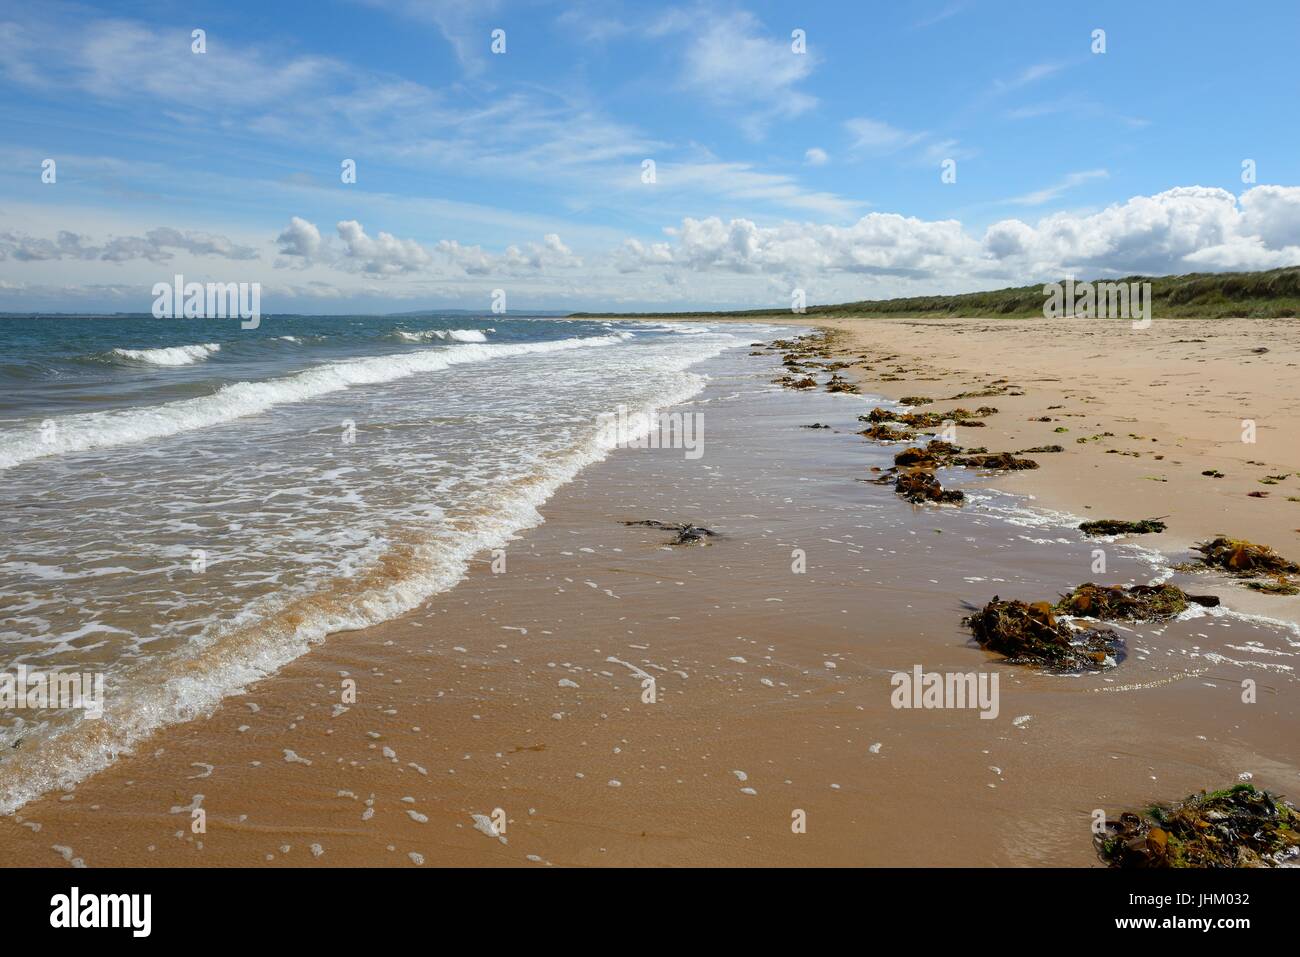 La plage primée de Dornoch, Sutherland, Scotland, après la marée haute et vent fort quitter les amas d'algues le long de la rive. Banque D'Images